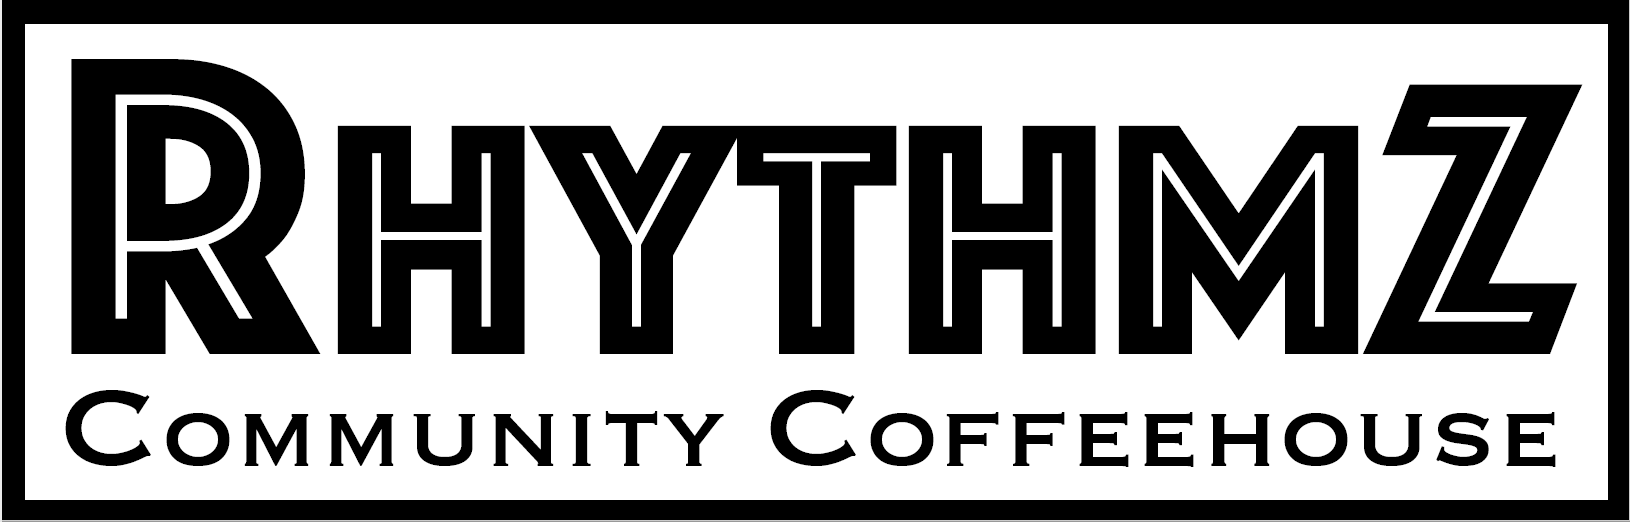 Rhythmz logo